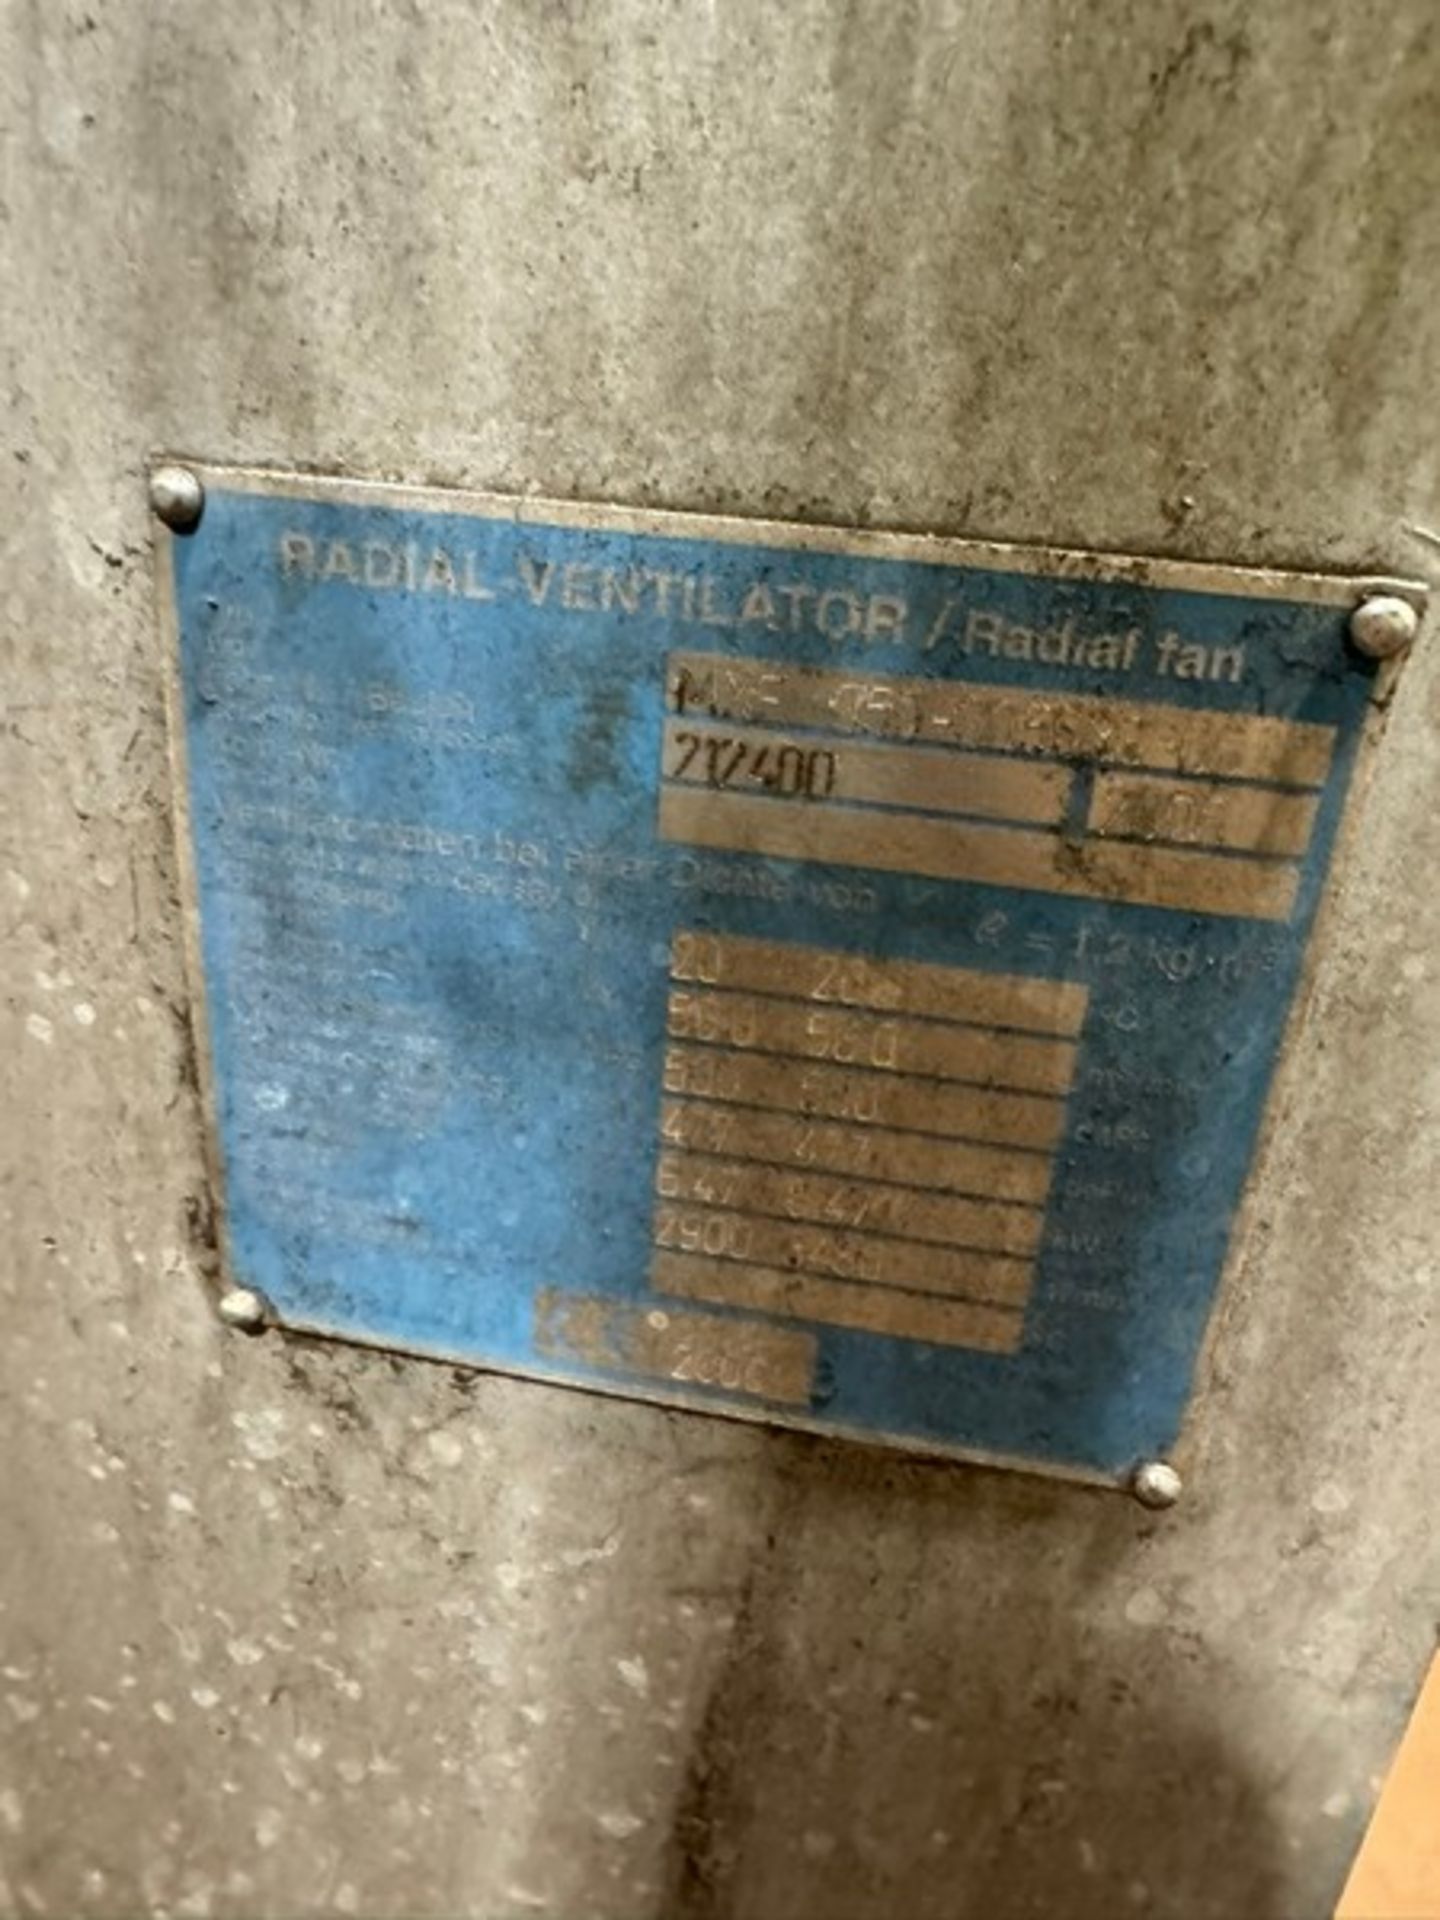 2006 Wartung der Öllager Radial Fresh Air Fan, M/N MXF 050-005630-60, S/N 212400, with Siemen - Bild 5 aus 7